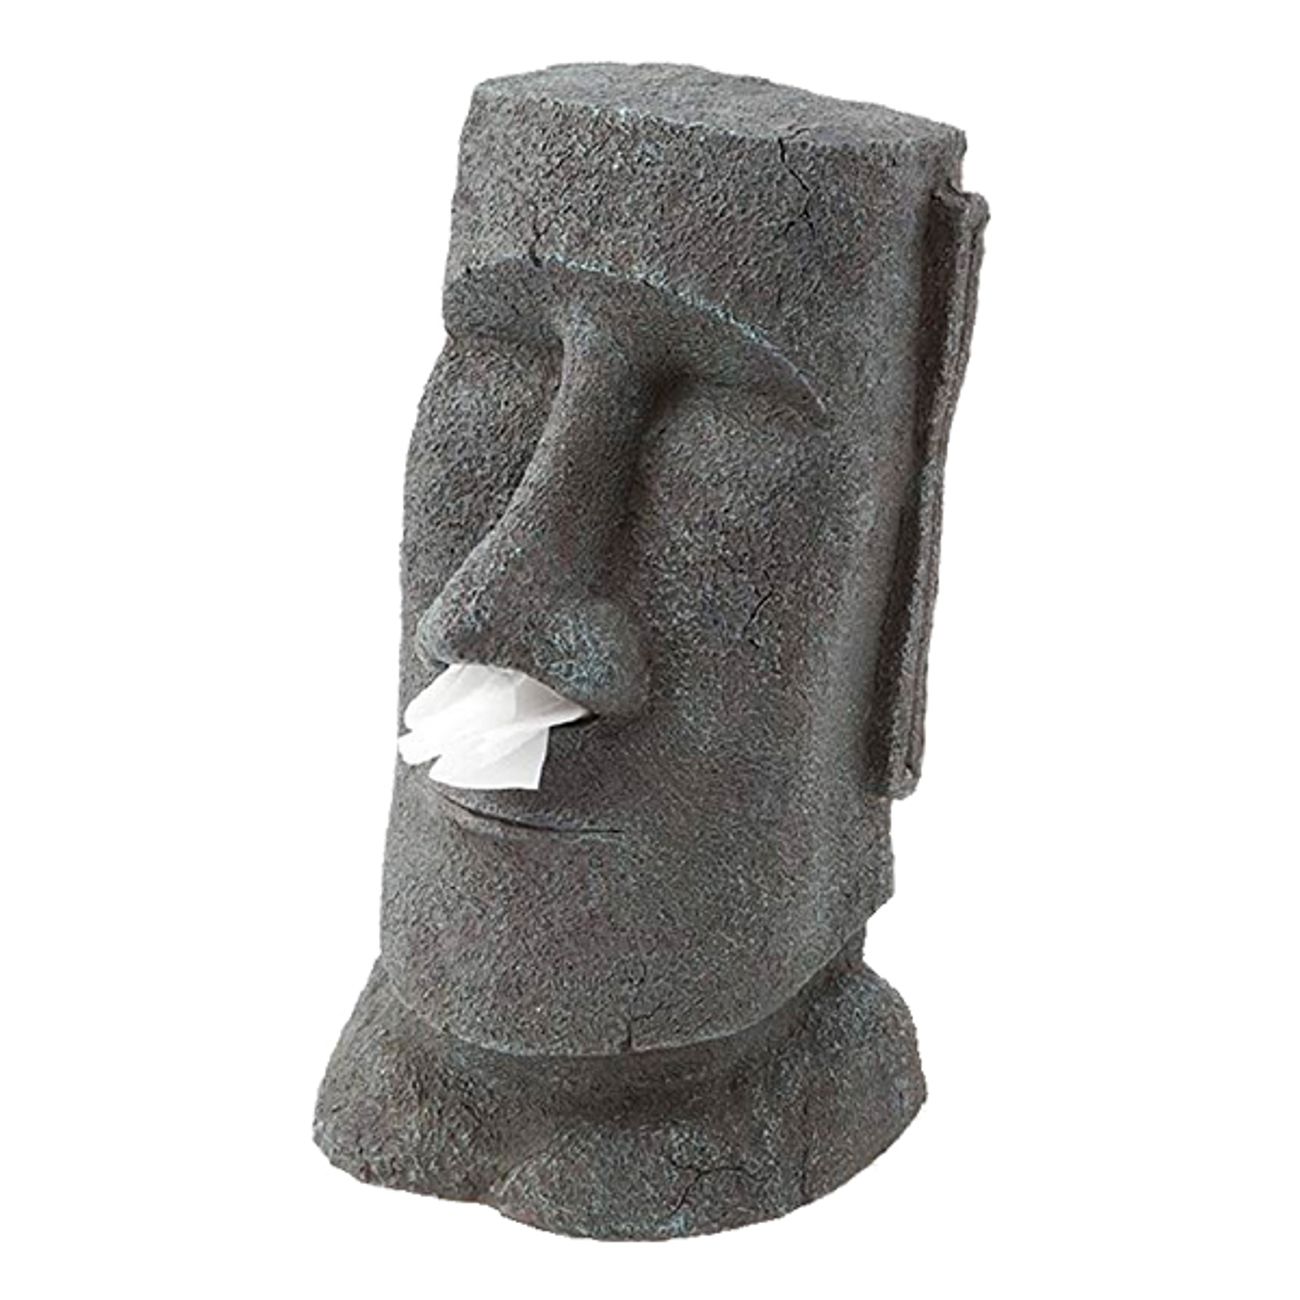 rotary-hero-moai-tissue-box-holder-1